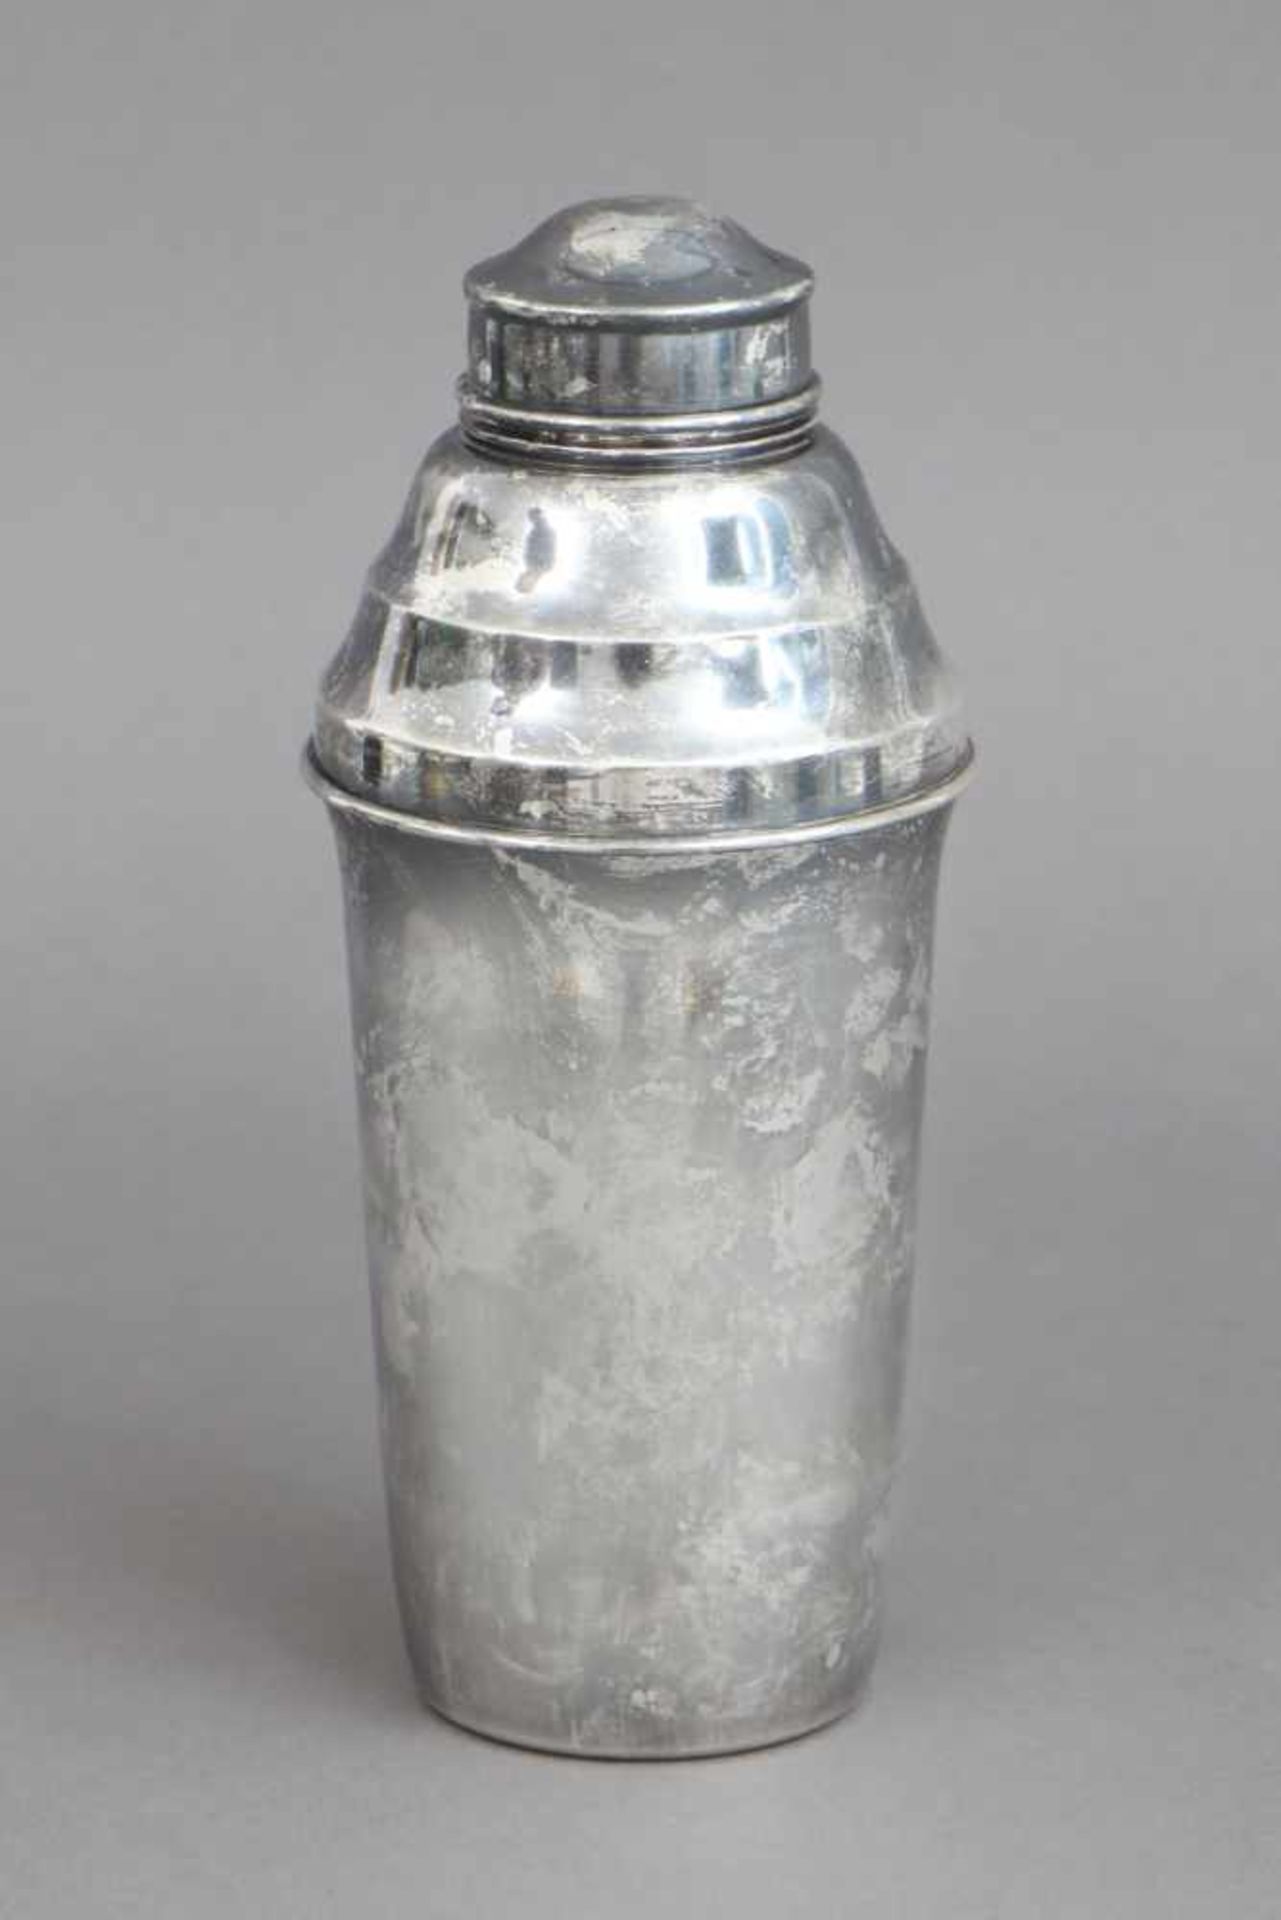 Cocktail Shaker im Stile des Art Decoversilbertes Metall, ungemarkt, H ca. 21cm